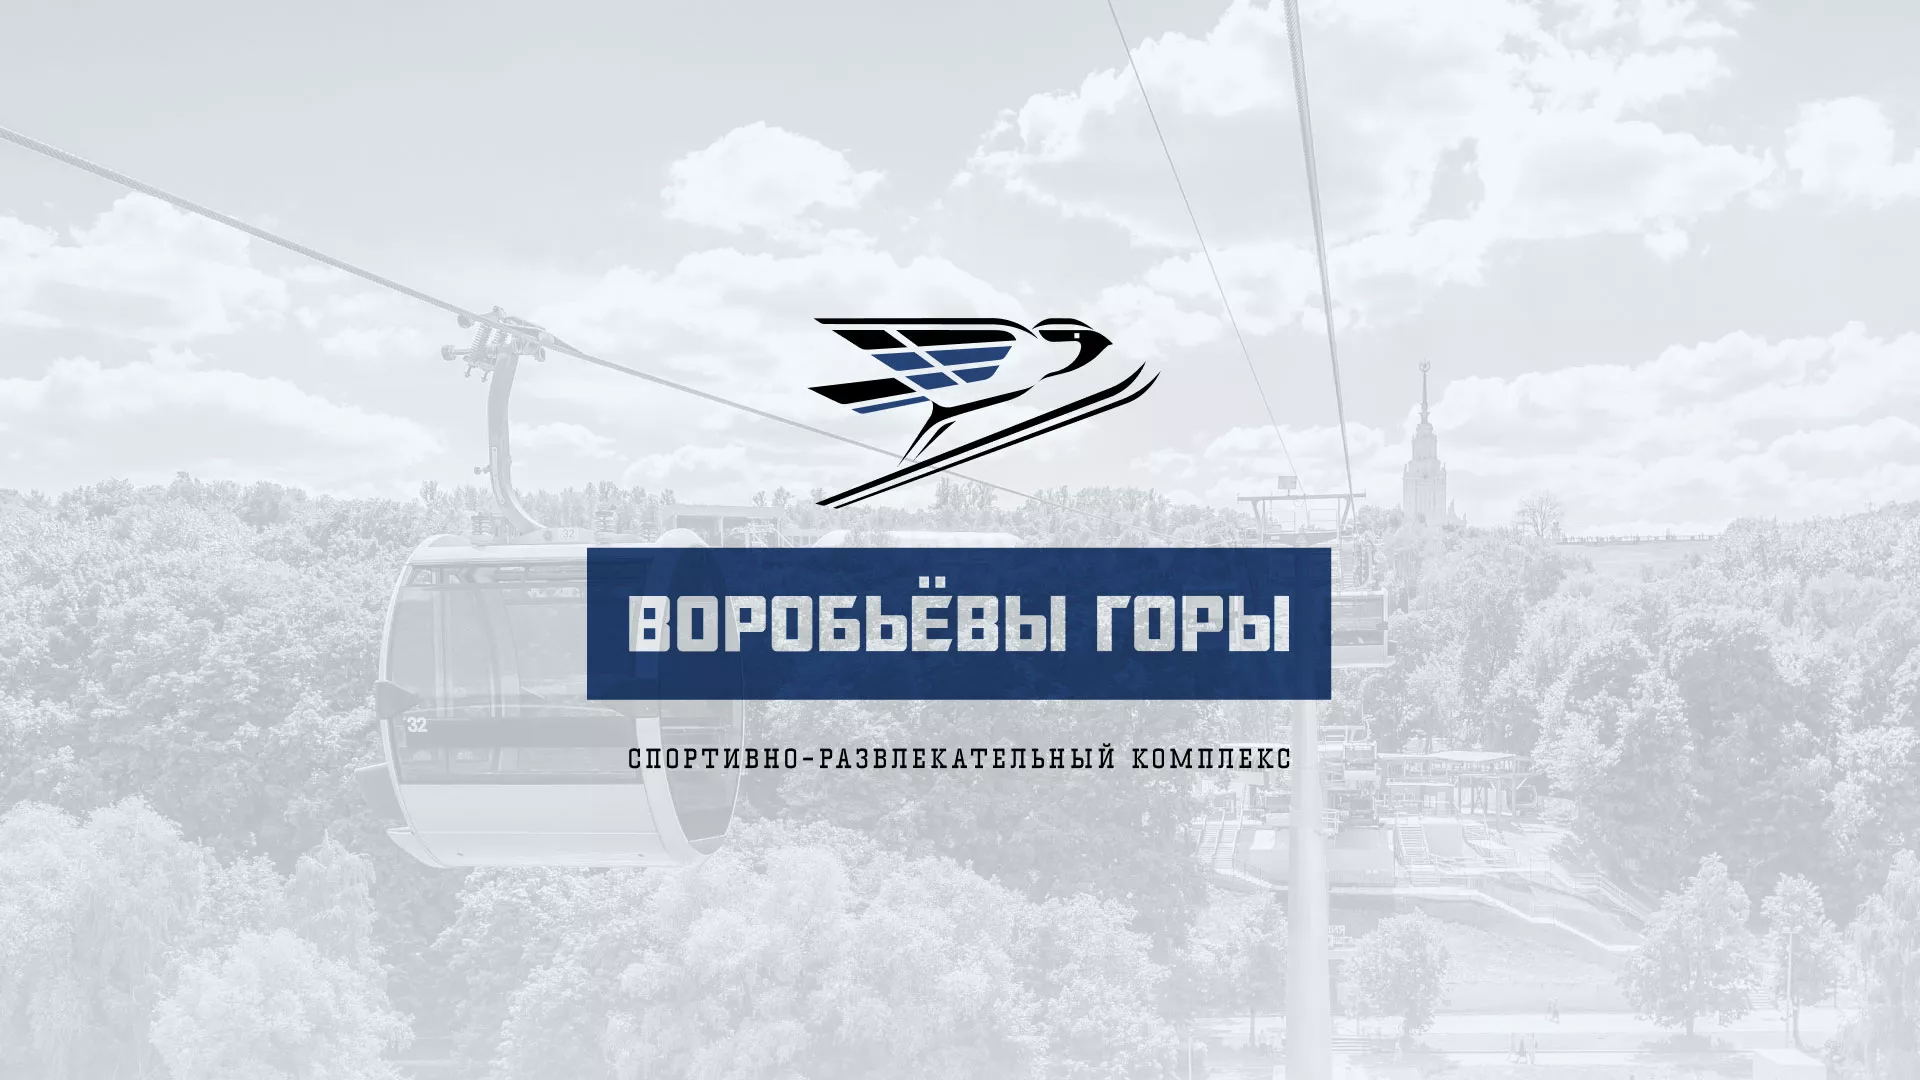 Разработка сайта в Соколе для спортивно-развлекательного комплекса «Воробьёвы горы»